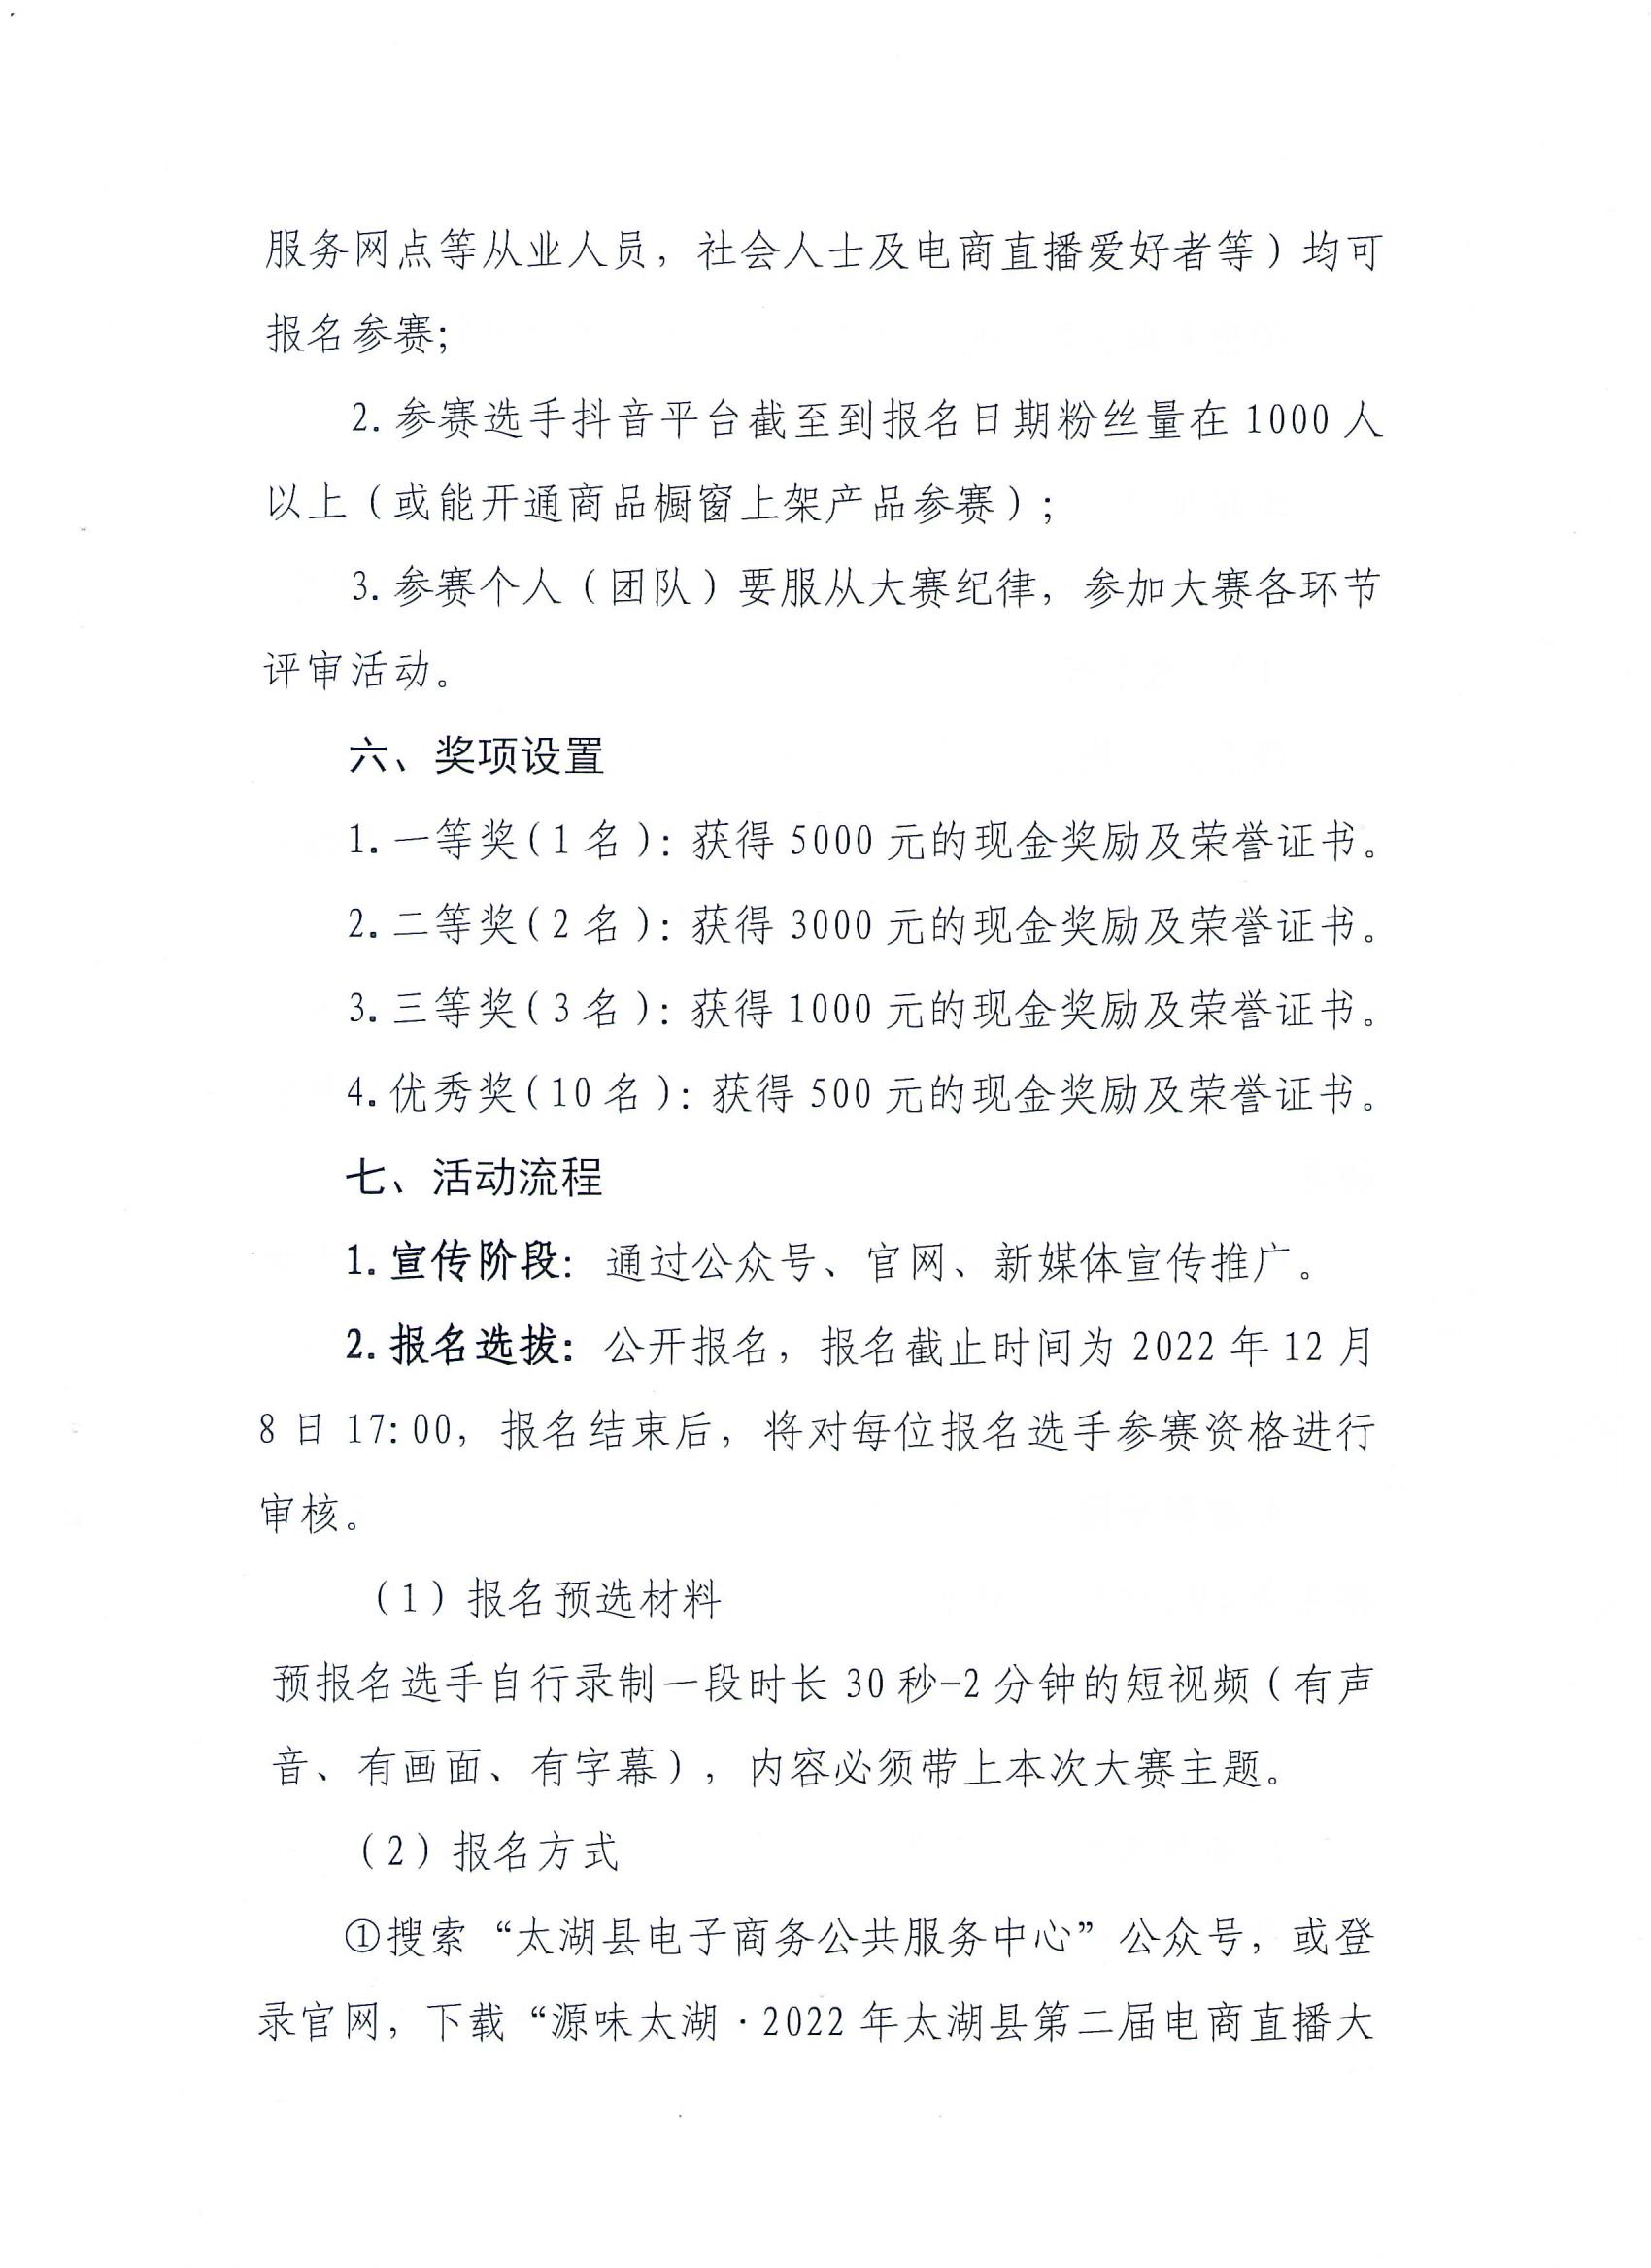 关于开展2022年太湖县第二届电商直播大赛的通知(1)_02.jpg